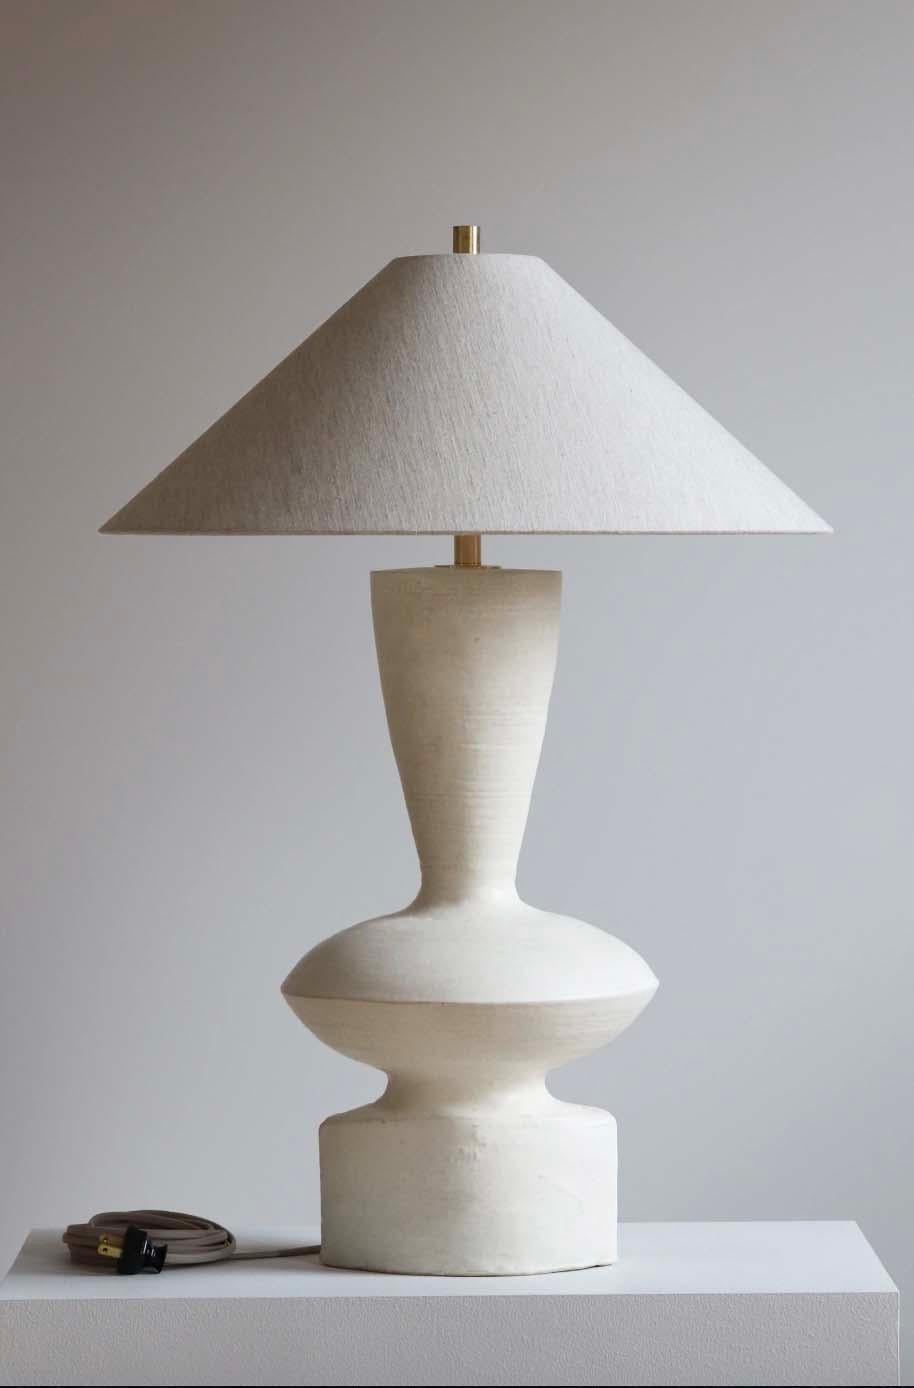 Die Luna-Lampe ist eine handgefertigte Studiotöpferei des Keramikkünstlers Danny Kaplan. Inklusive Lampenschirm. Bitte beachten Sie, dass die genauen Abmessungen variieren können.

Geboren in New York City und aufgewachsen in Aix-en-Provence,